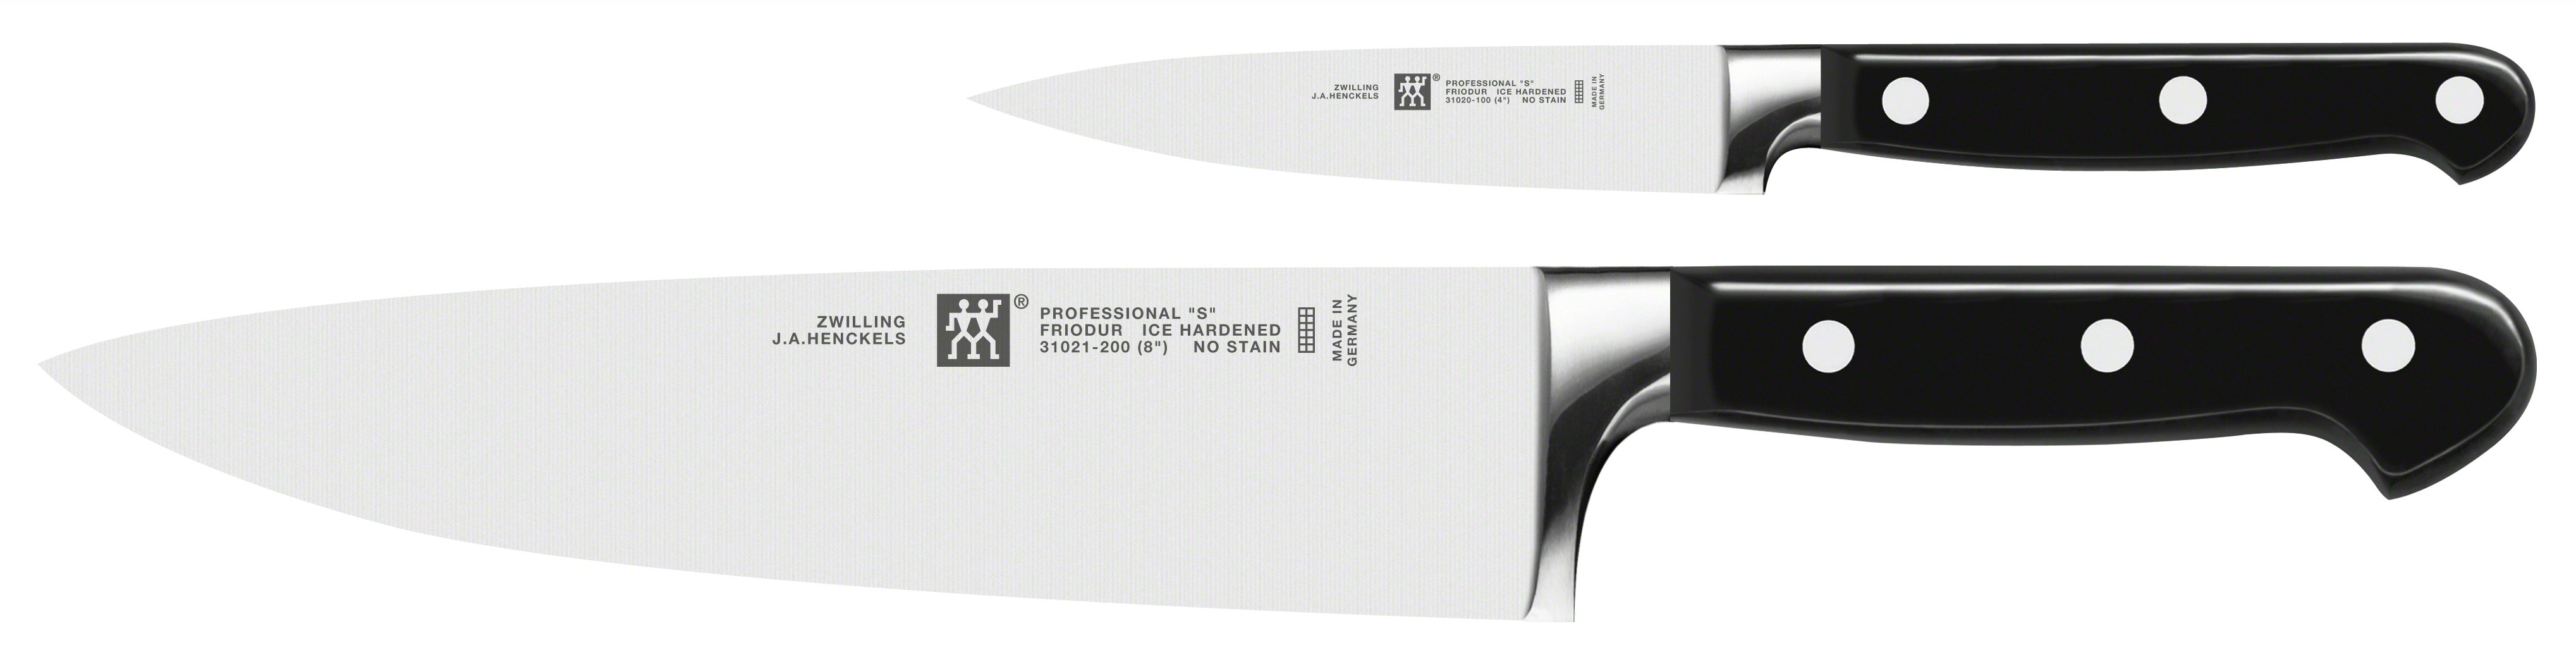 Zwilling Professional “S" sada nožov - 2 ks (kuchársky, špikovací) 35645-000 35645-000